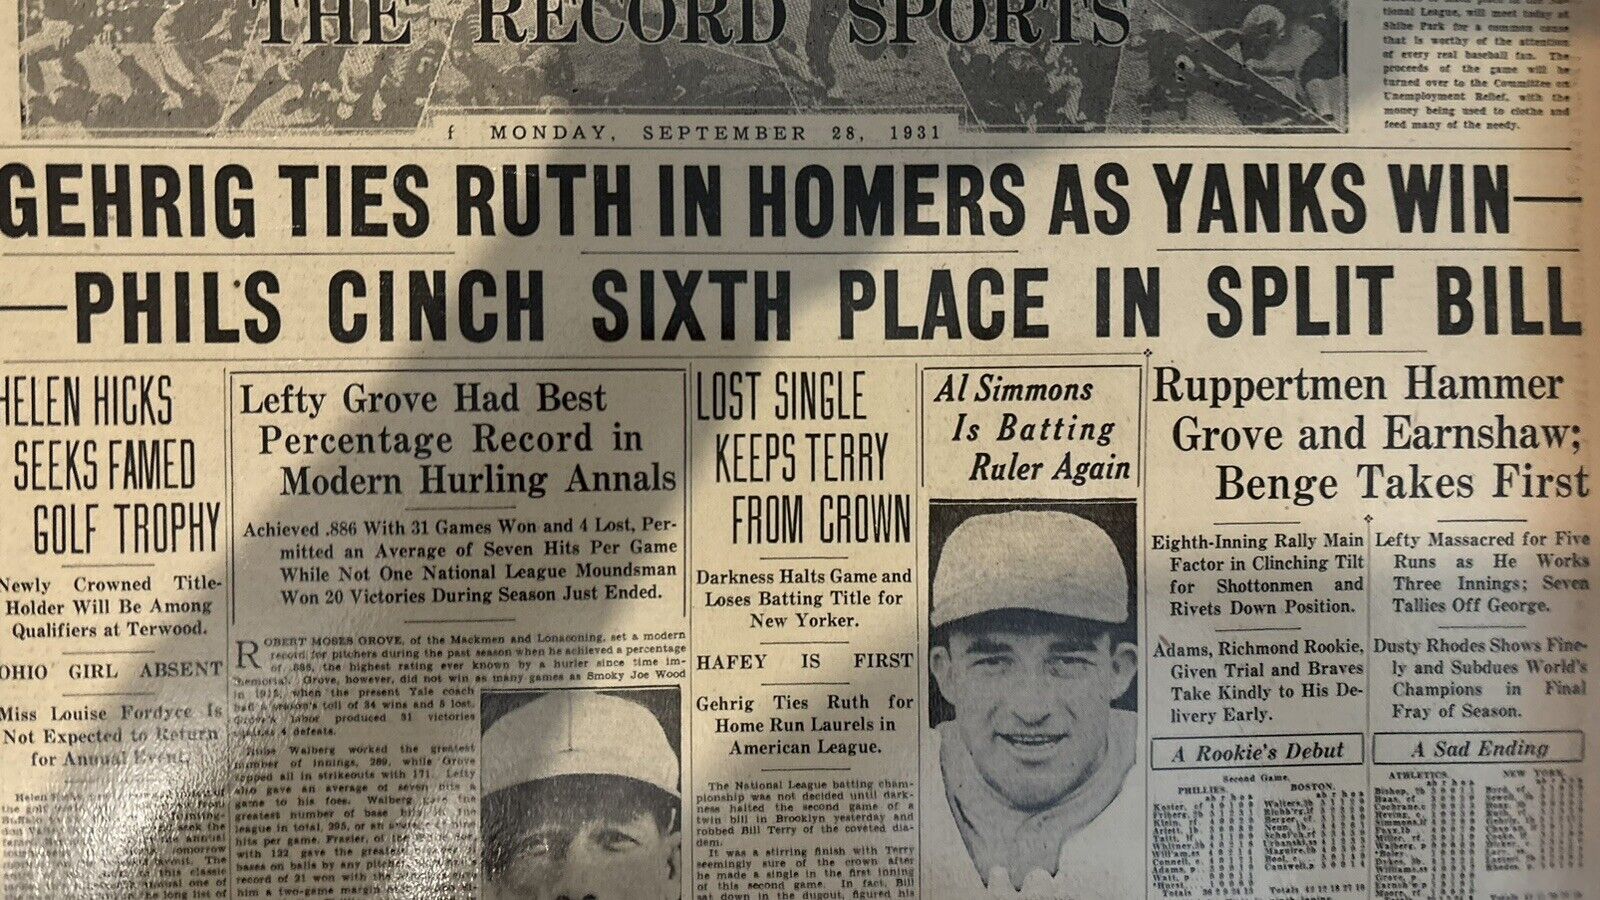 LOU GHERIG BABE RUTH 1926 Newspaper RARE 100% Original AUTHENTIC Bold Headline